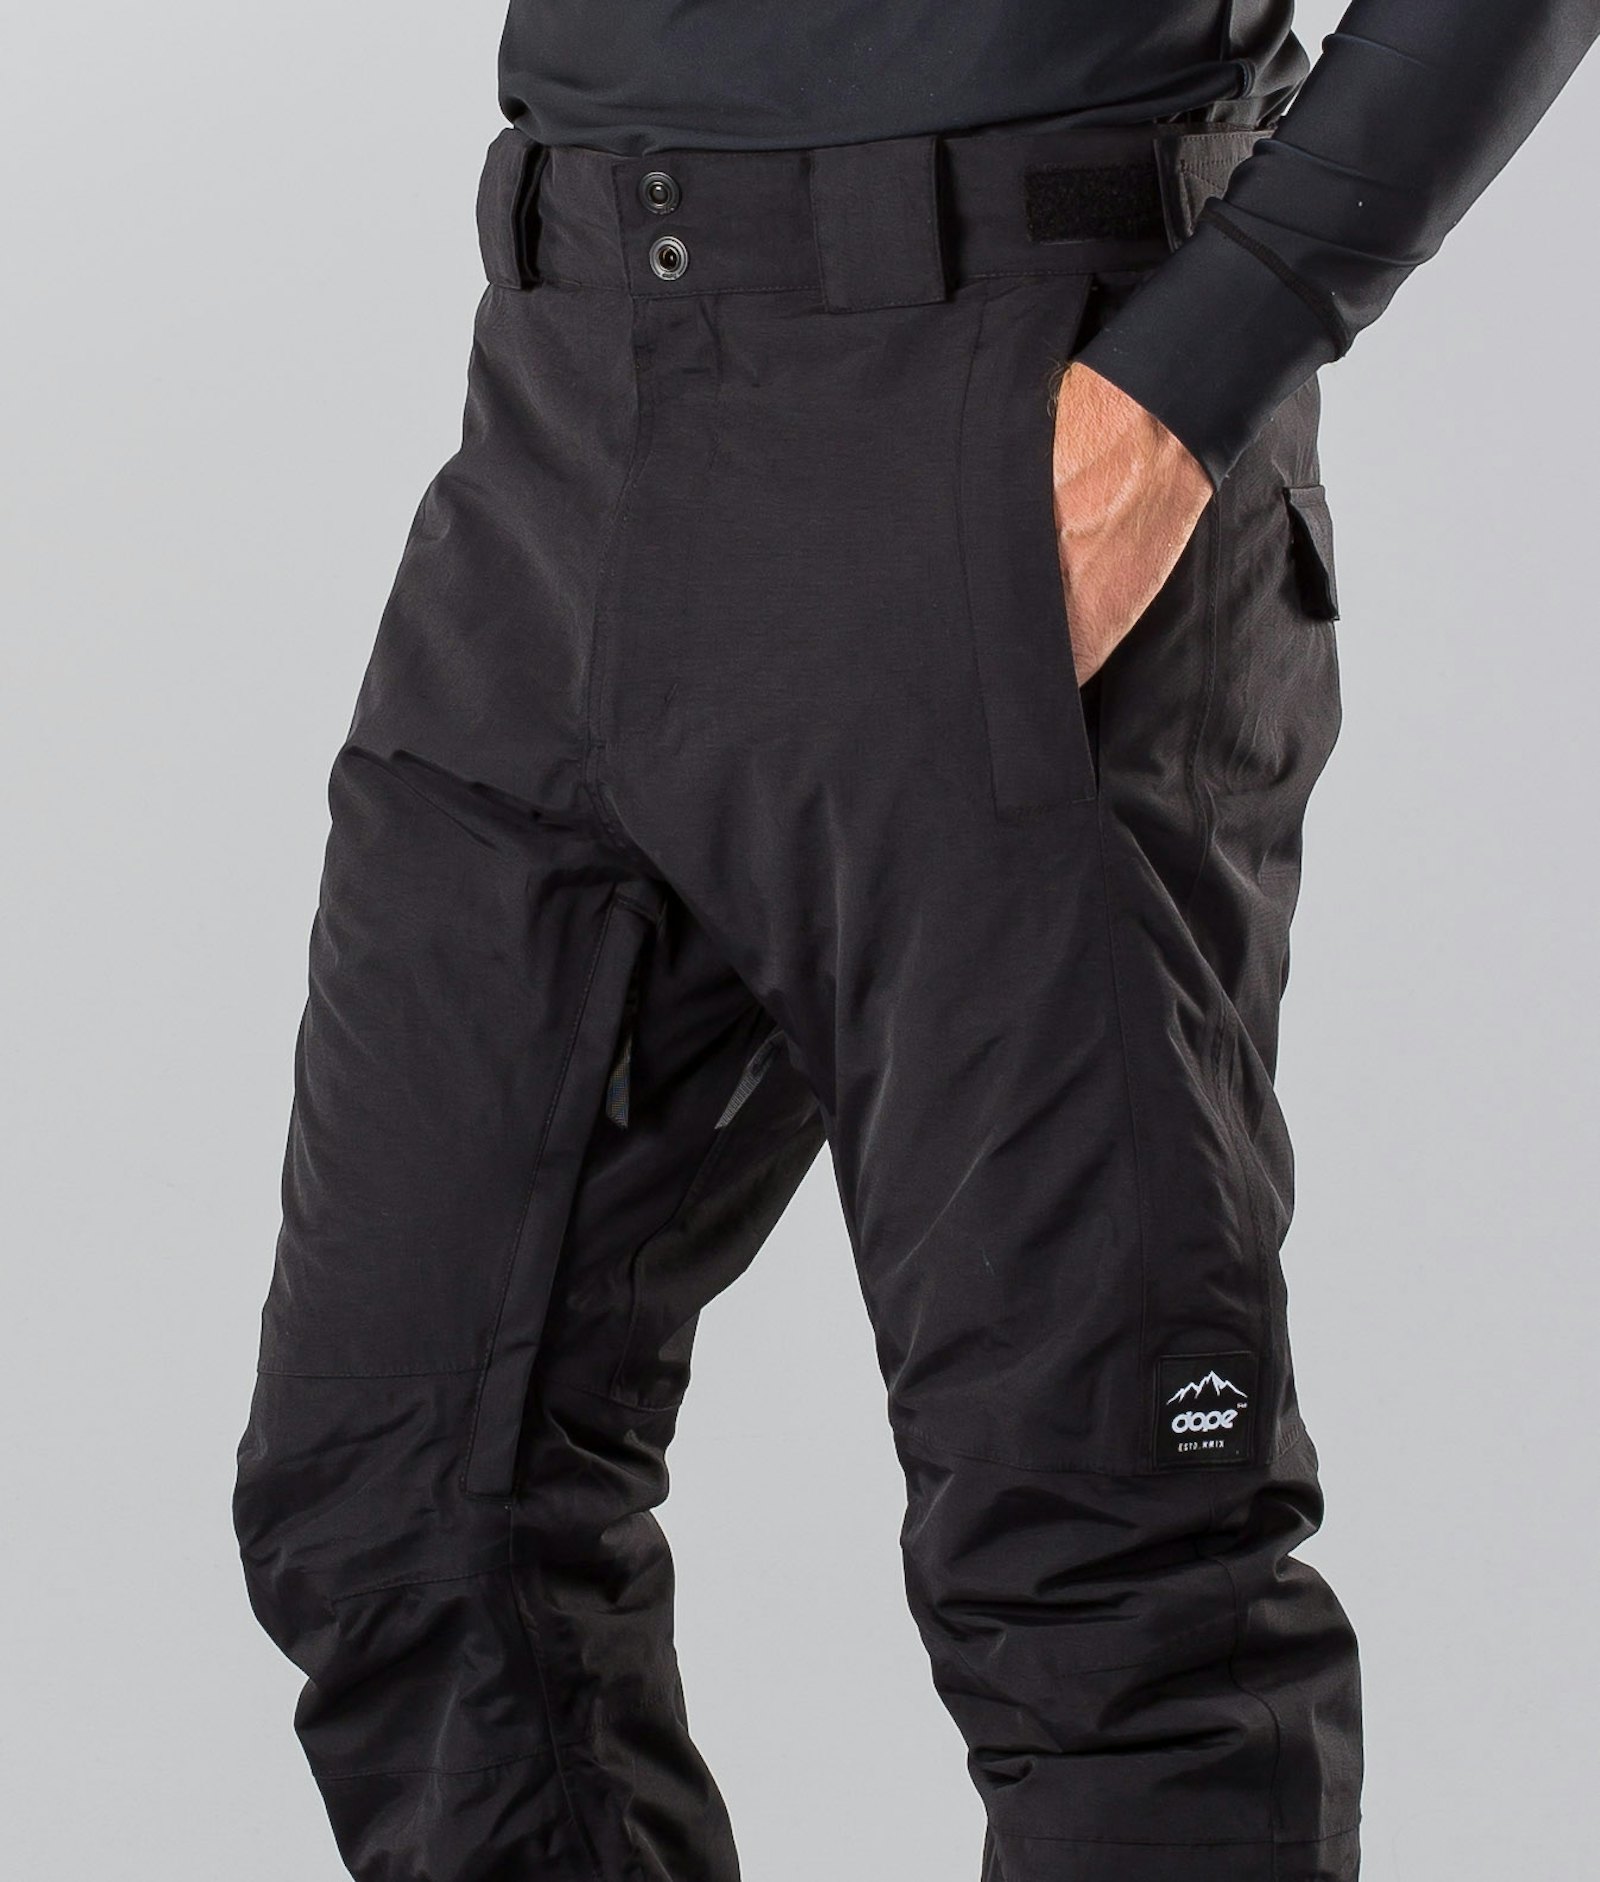 Dope Hoax II 2018 Spodnie Snowboardowe Mężczyźni Black